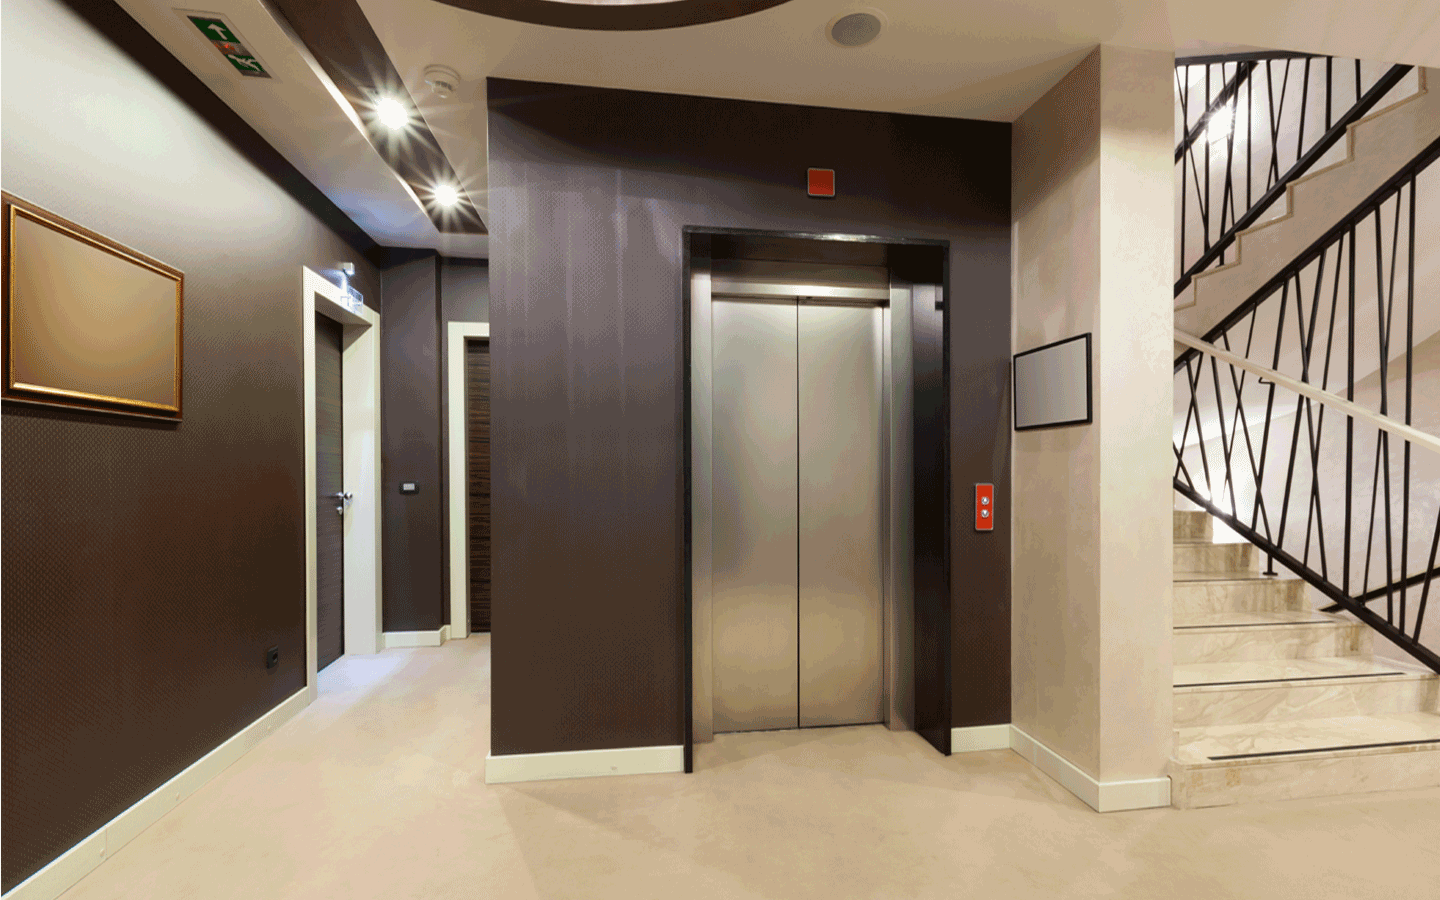 Chung cư mấy tầng phải có thang máy?